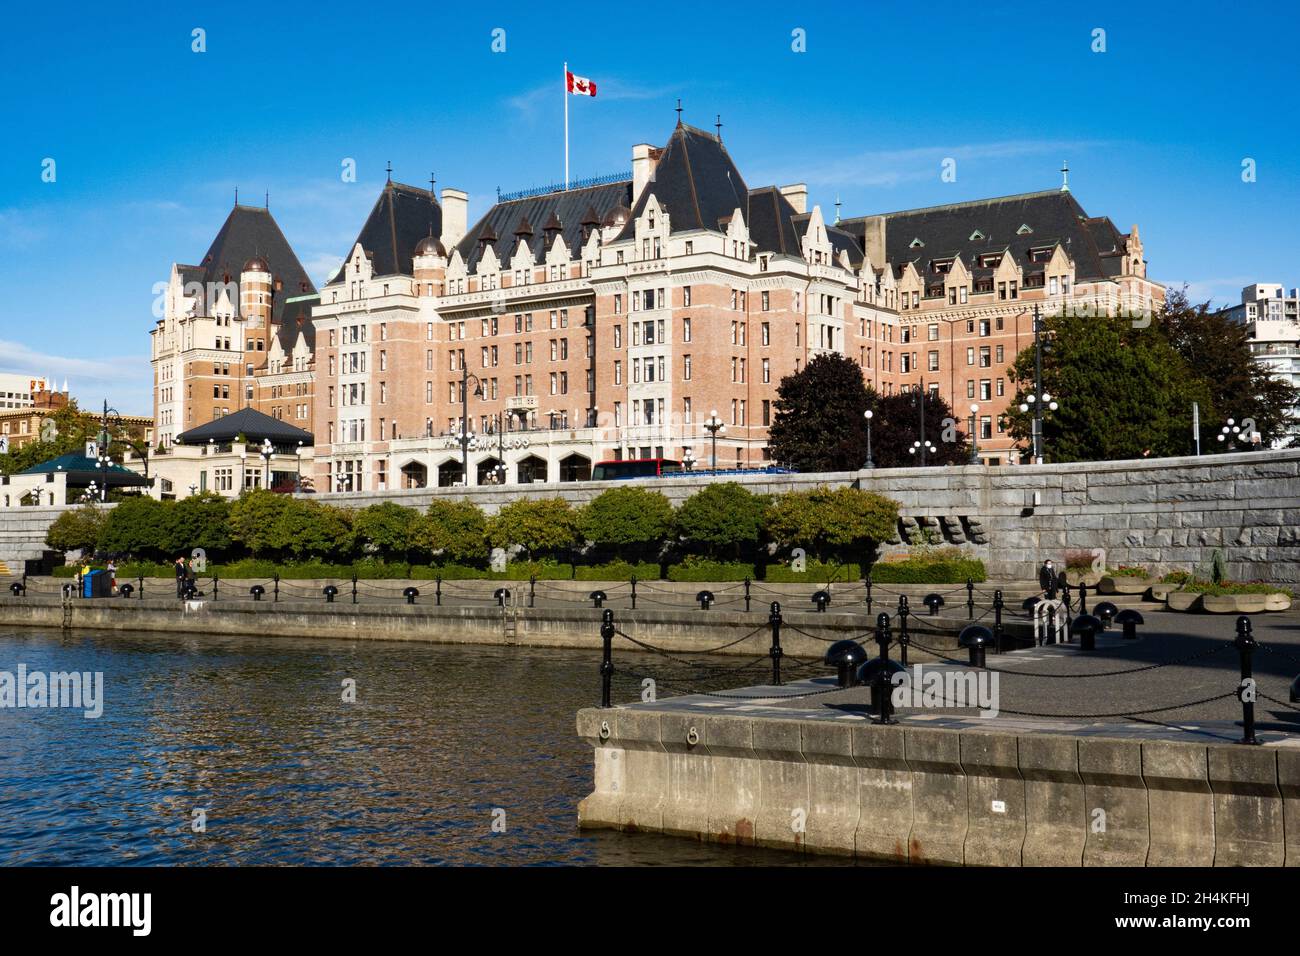 The Empress Hotel in Victoria, BC, Canada. Stock Photo